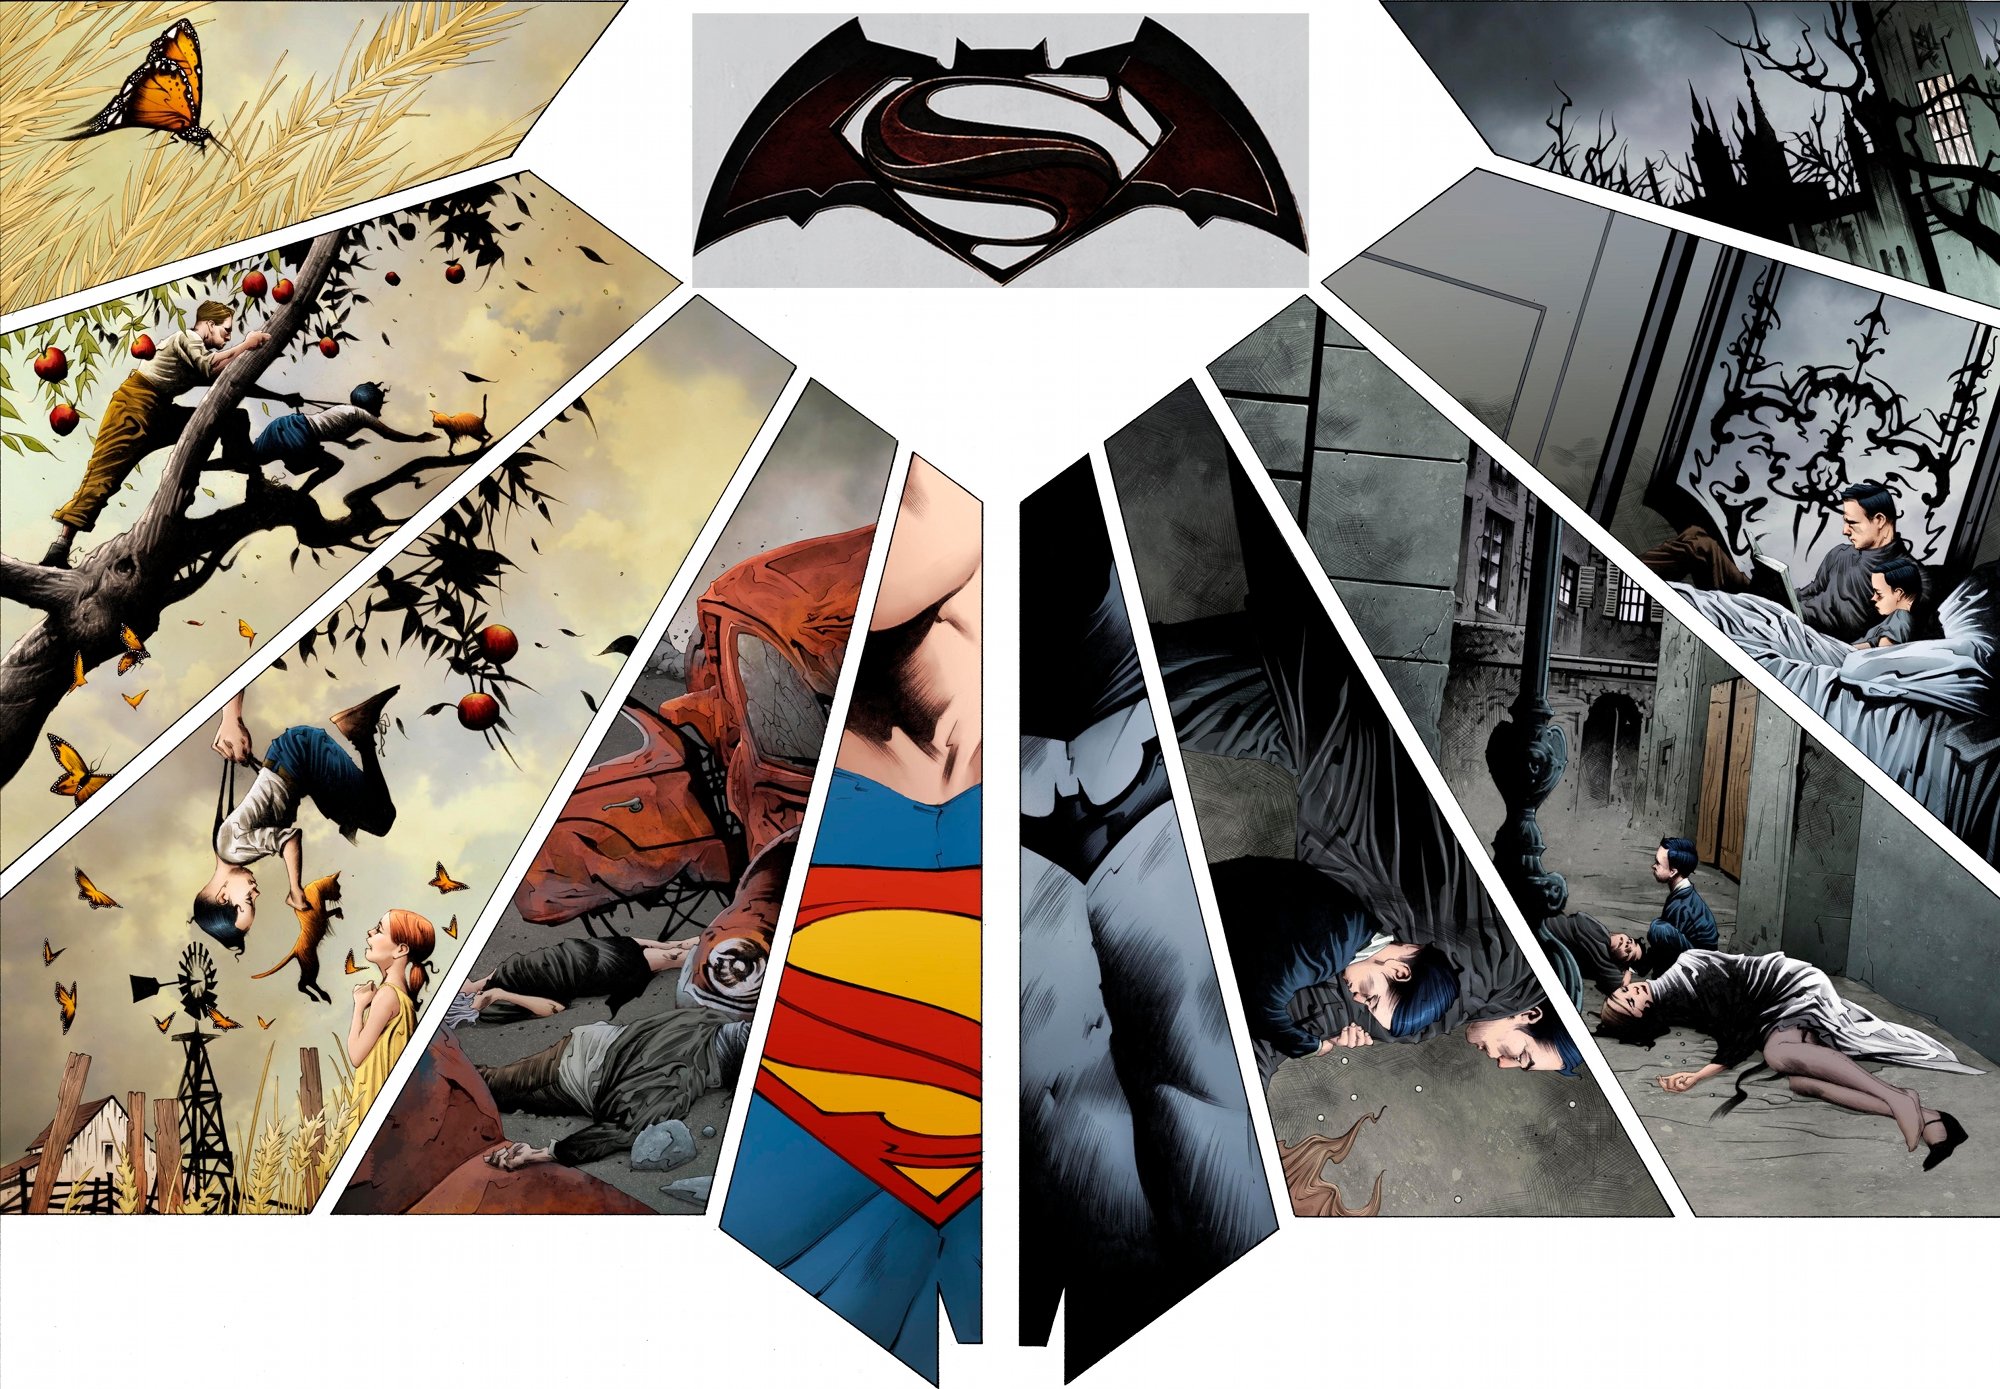 batman v superman, Adventure, Action, Batman, Superman, Dawn, Justice Wallpaper